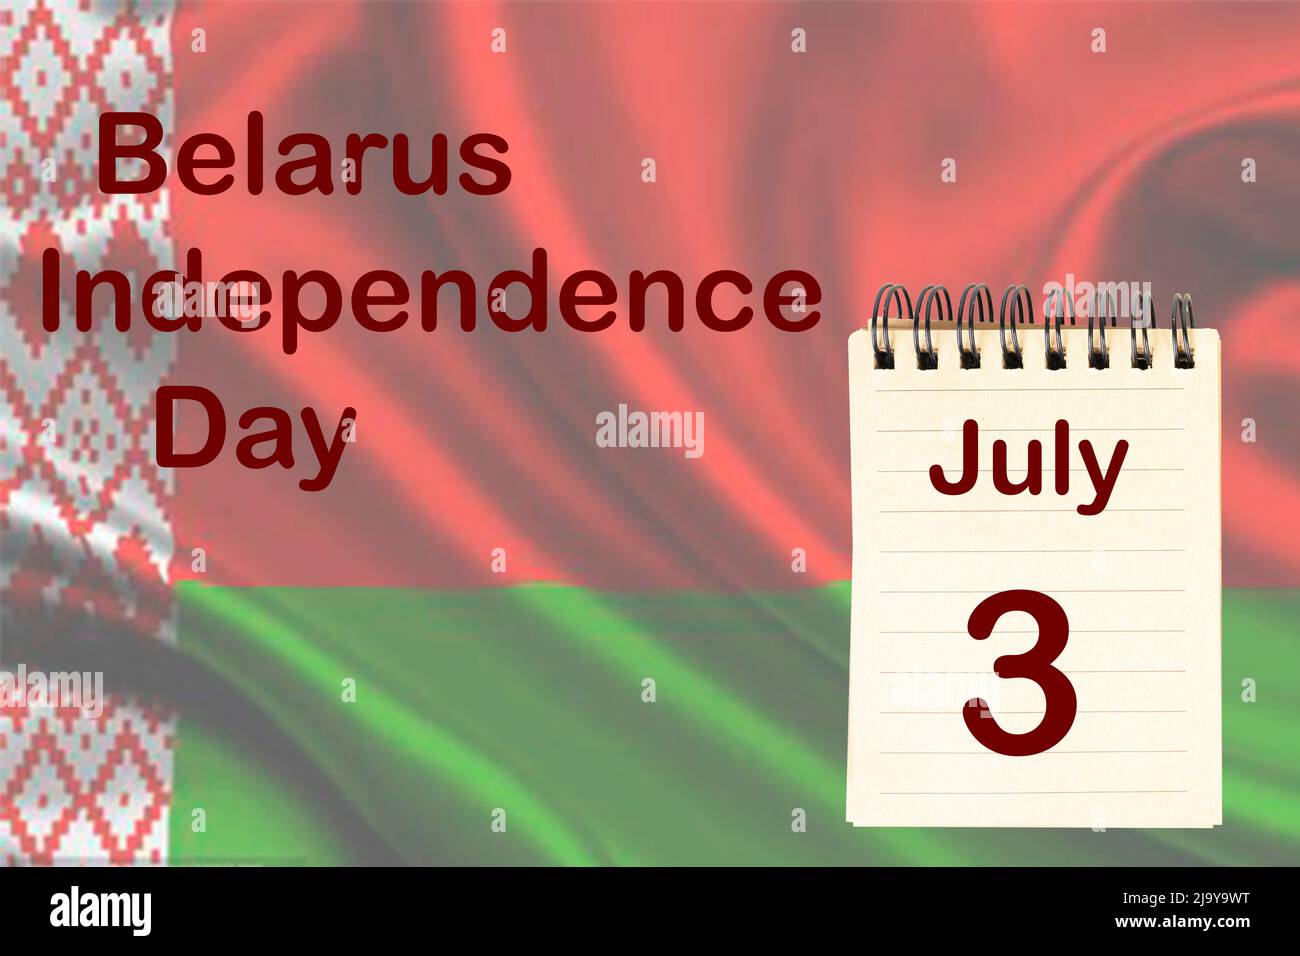 La célébration de la Journée de l'indépendance du Bélarus avec le drapeau et le calendrier indiquant le 3 juillet Banque D'Images